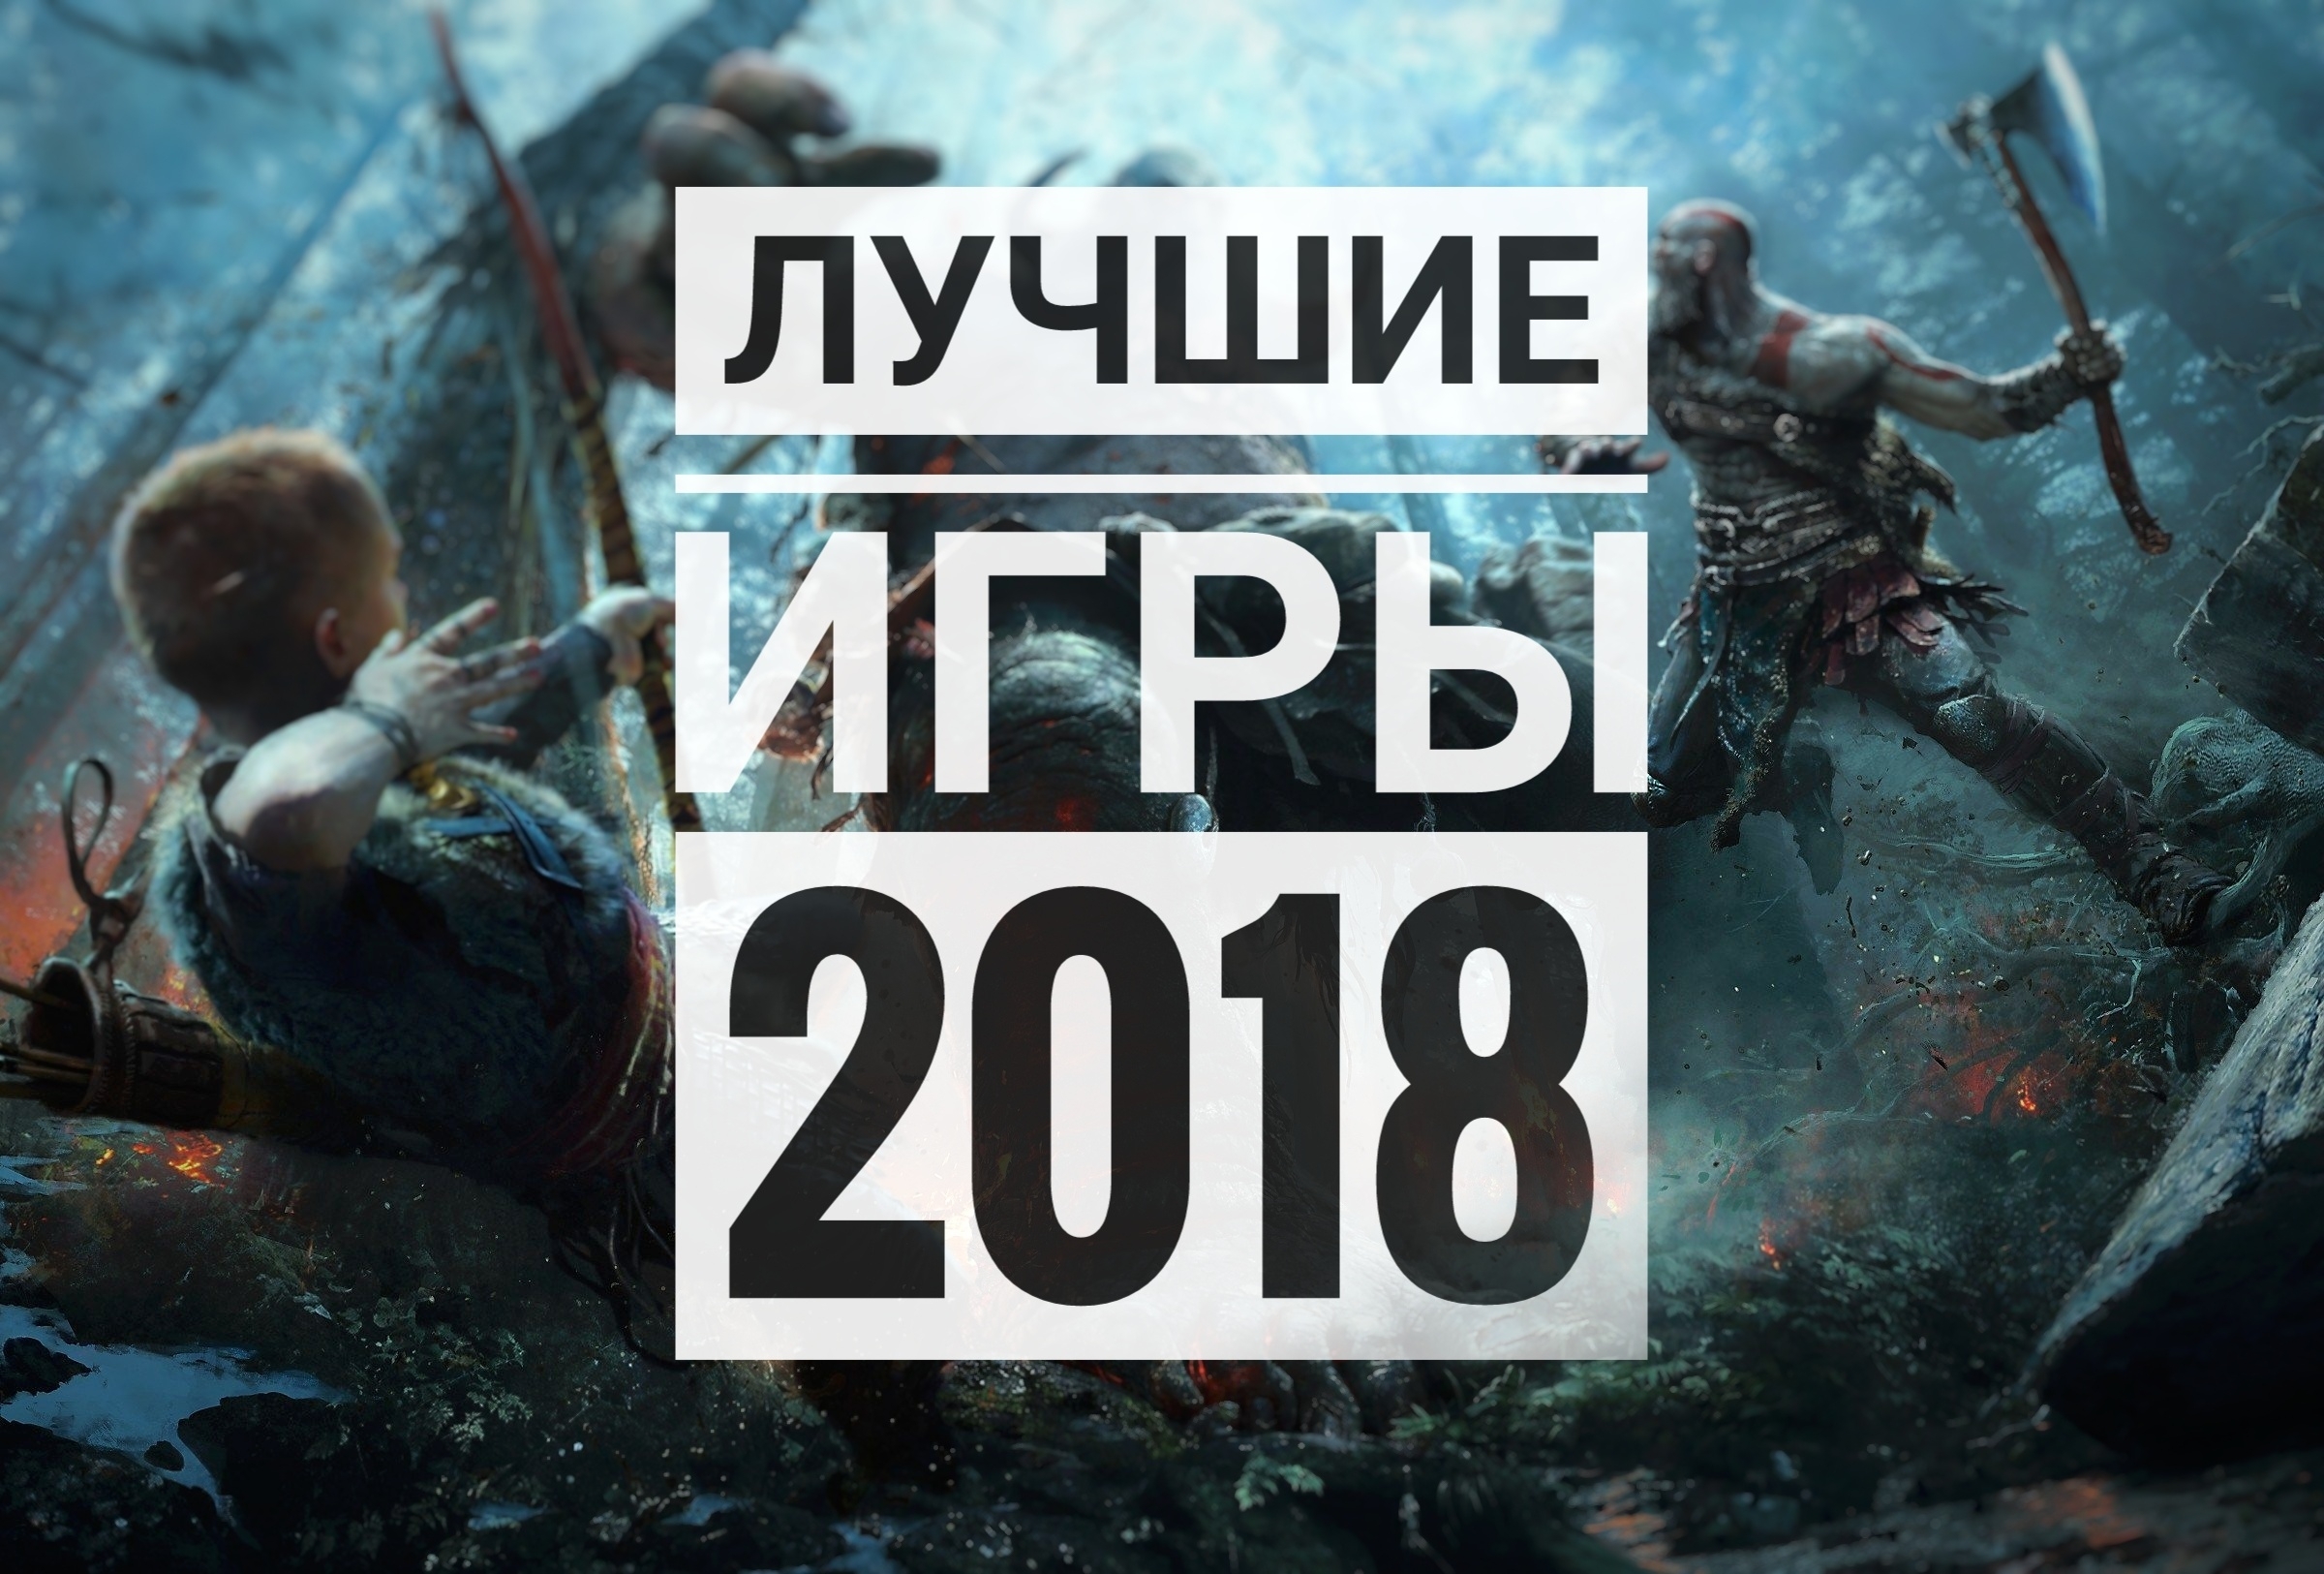 Статья Лучшие игры 2018 года по мнению GreatGamer.Ru